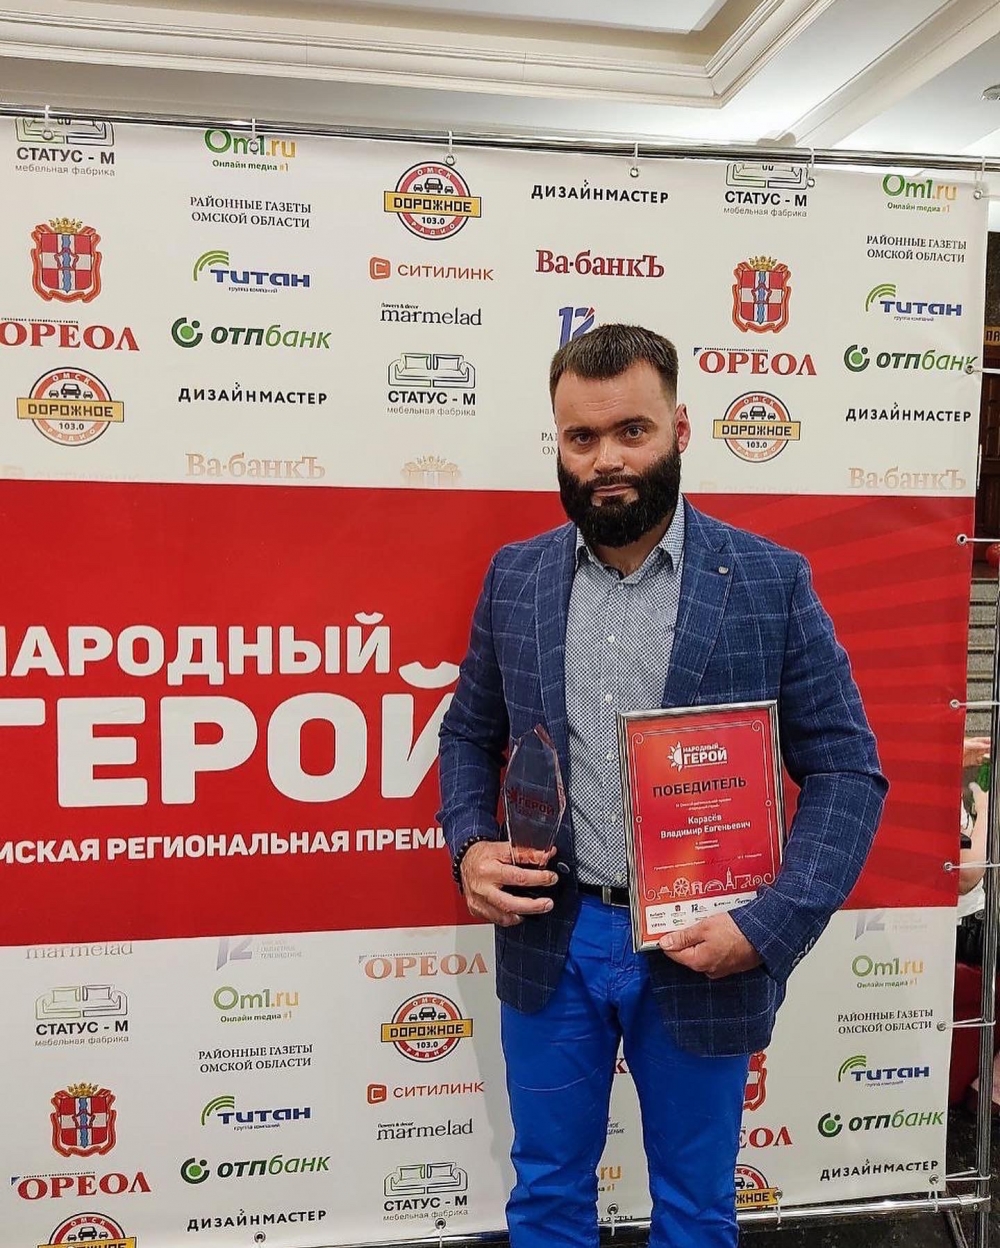 Владимир Карасёв - победитель региональной премии «Народный герой» в номинации «Продвижение».